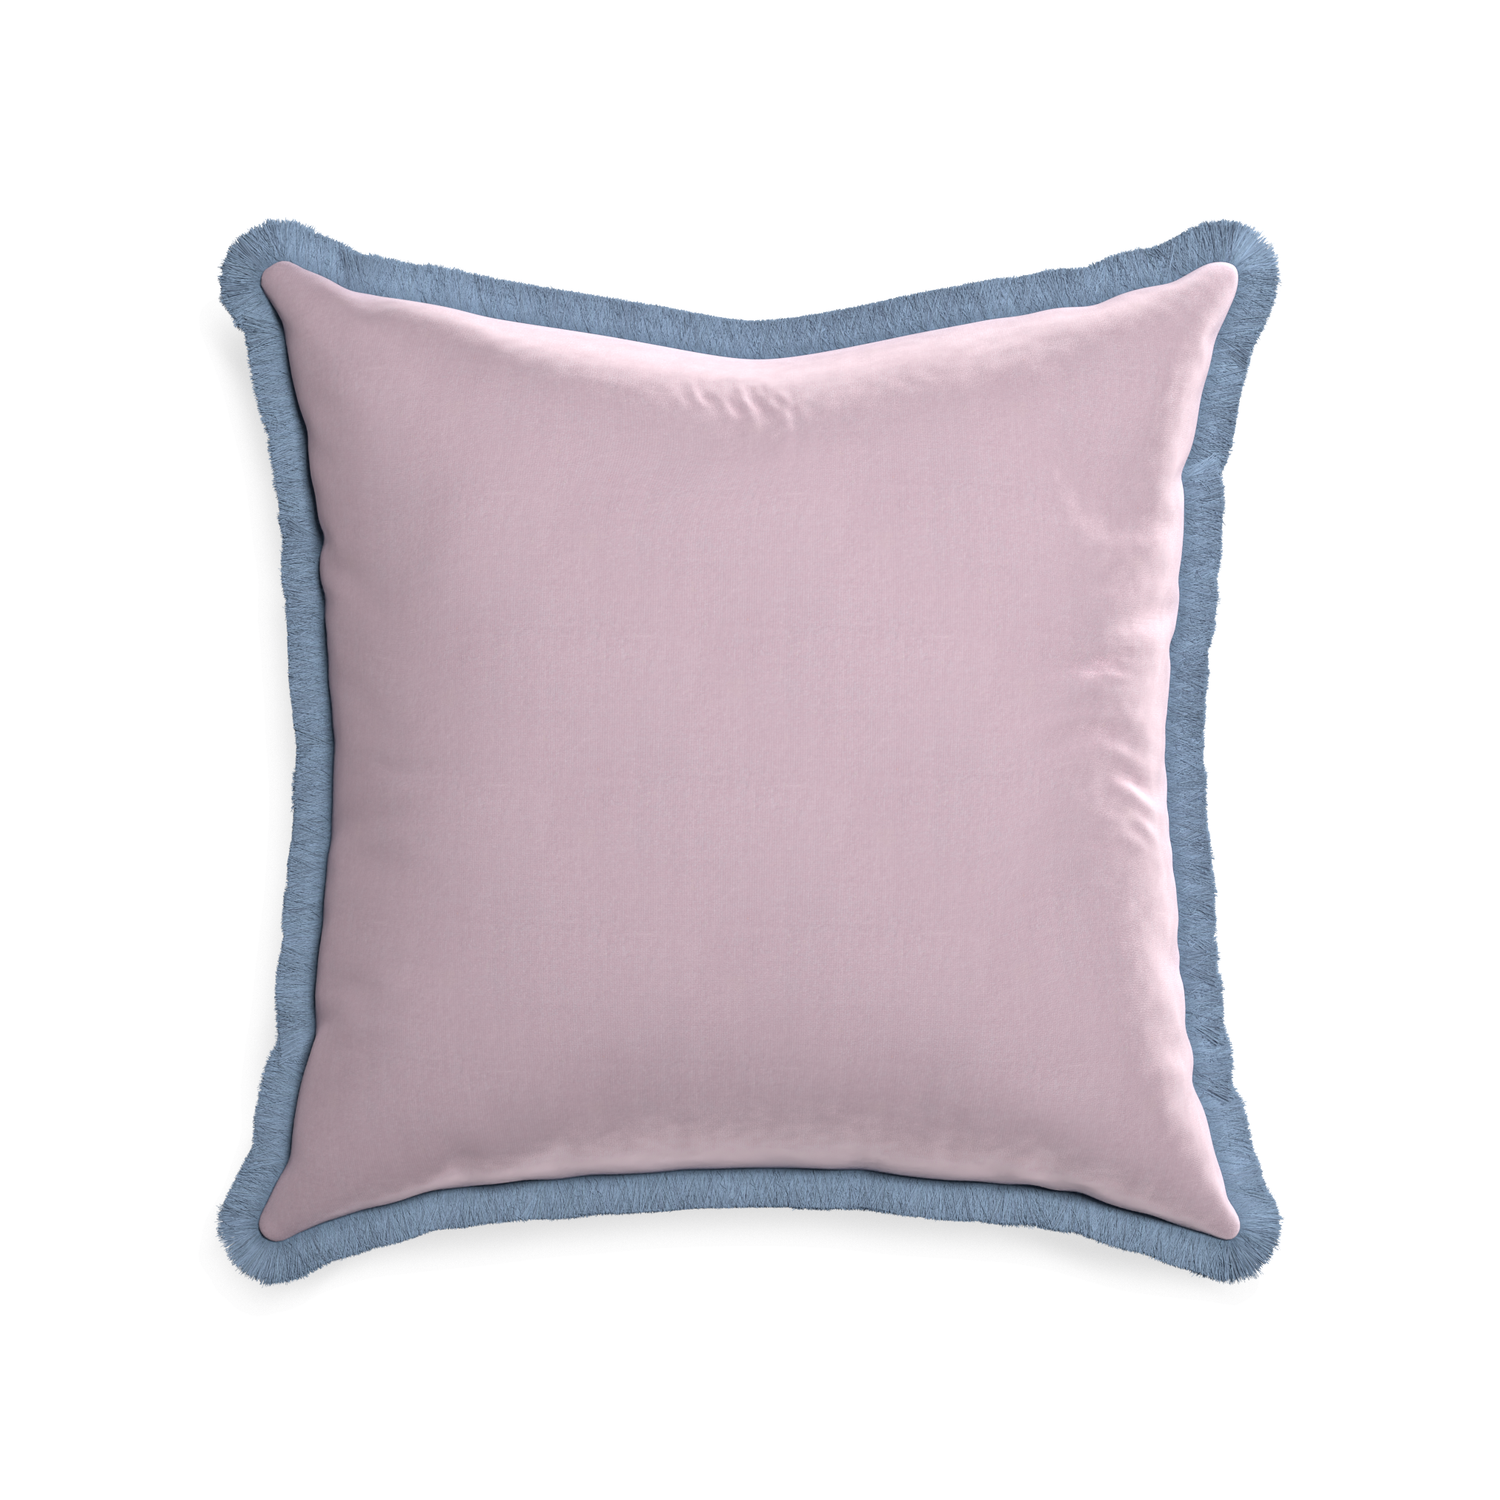 22-square lilac velvet custom pillow with sky fringe on white background